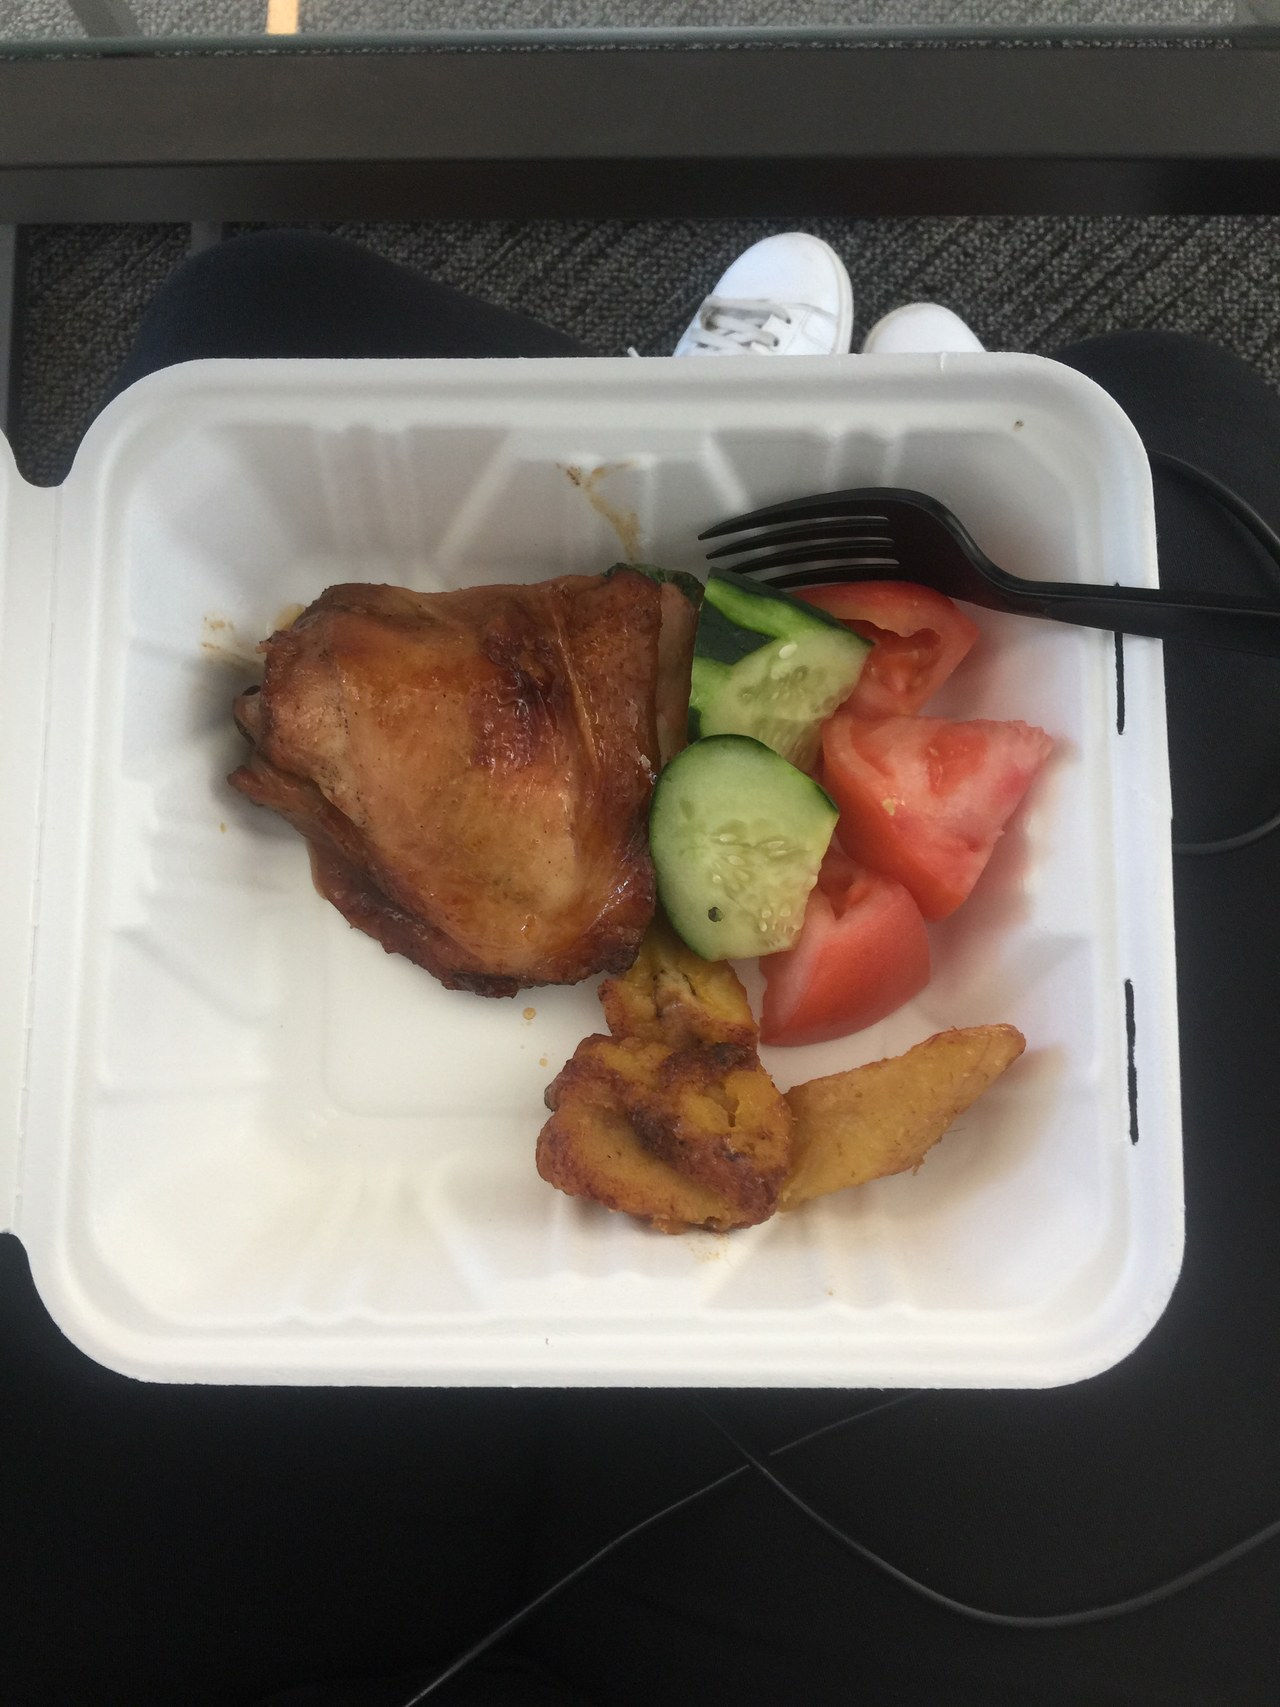 鸡， vegetables, banana, courtesy of the Condé Nast cafeteria.